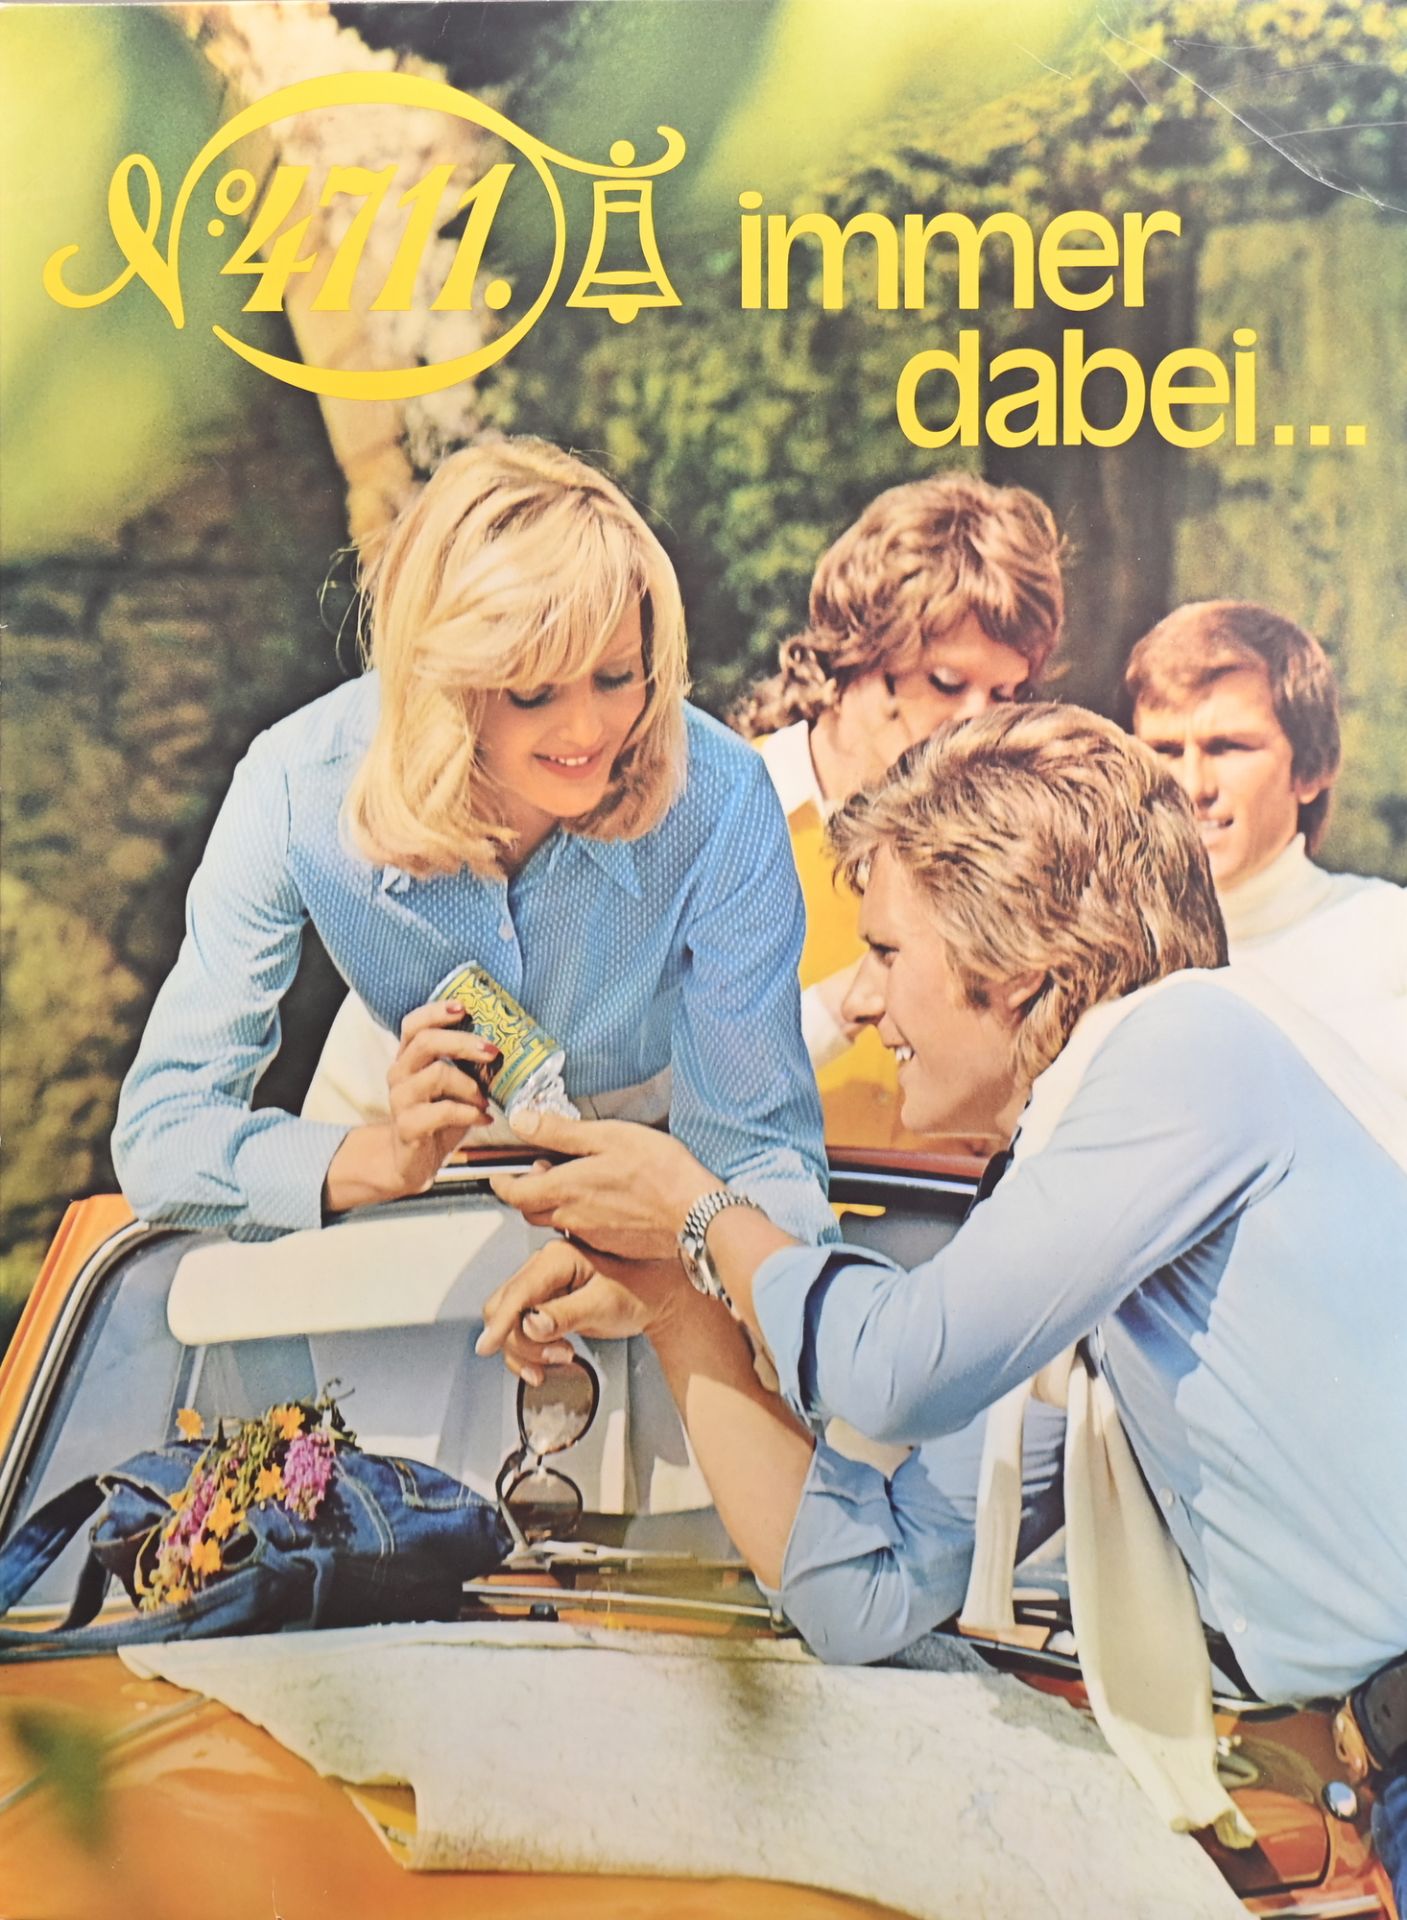 Werbeaufsteller "4711 immer dabei", um 1970, Pappe mit Aufstellsegel, aus Ladengeschäft, sehr